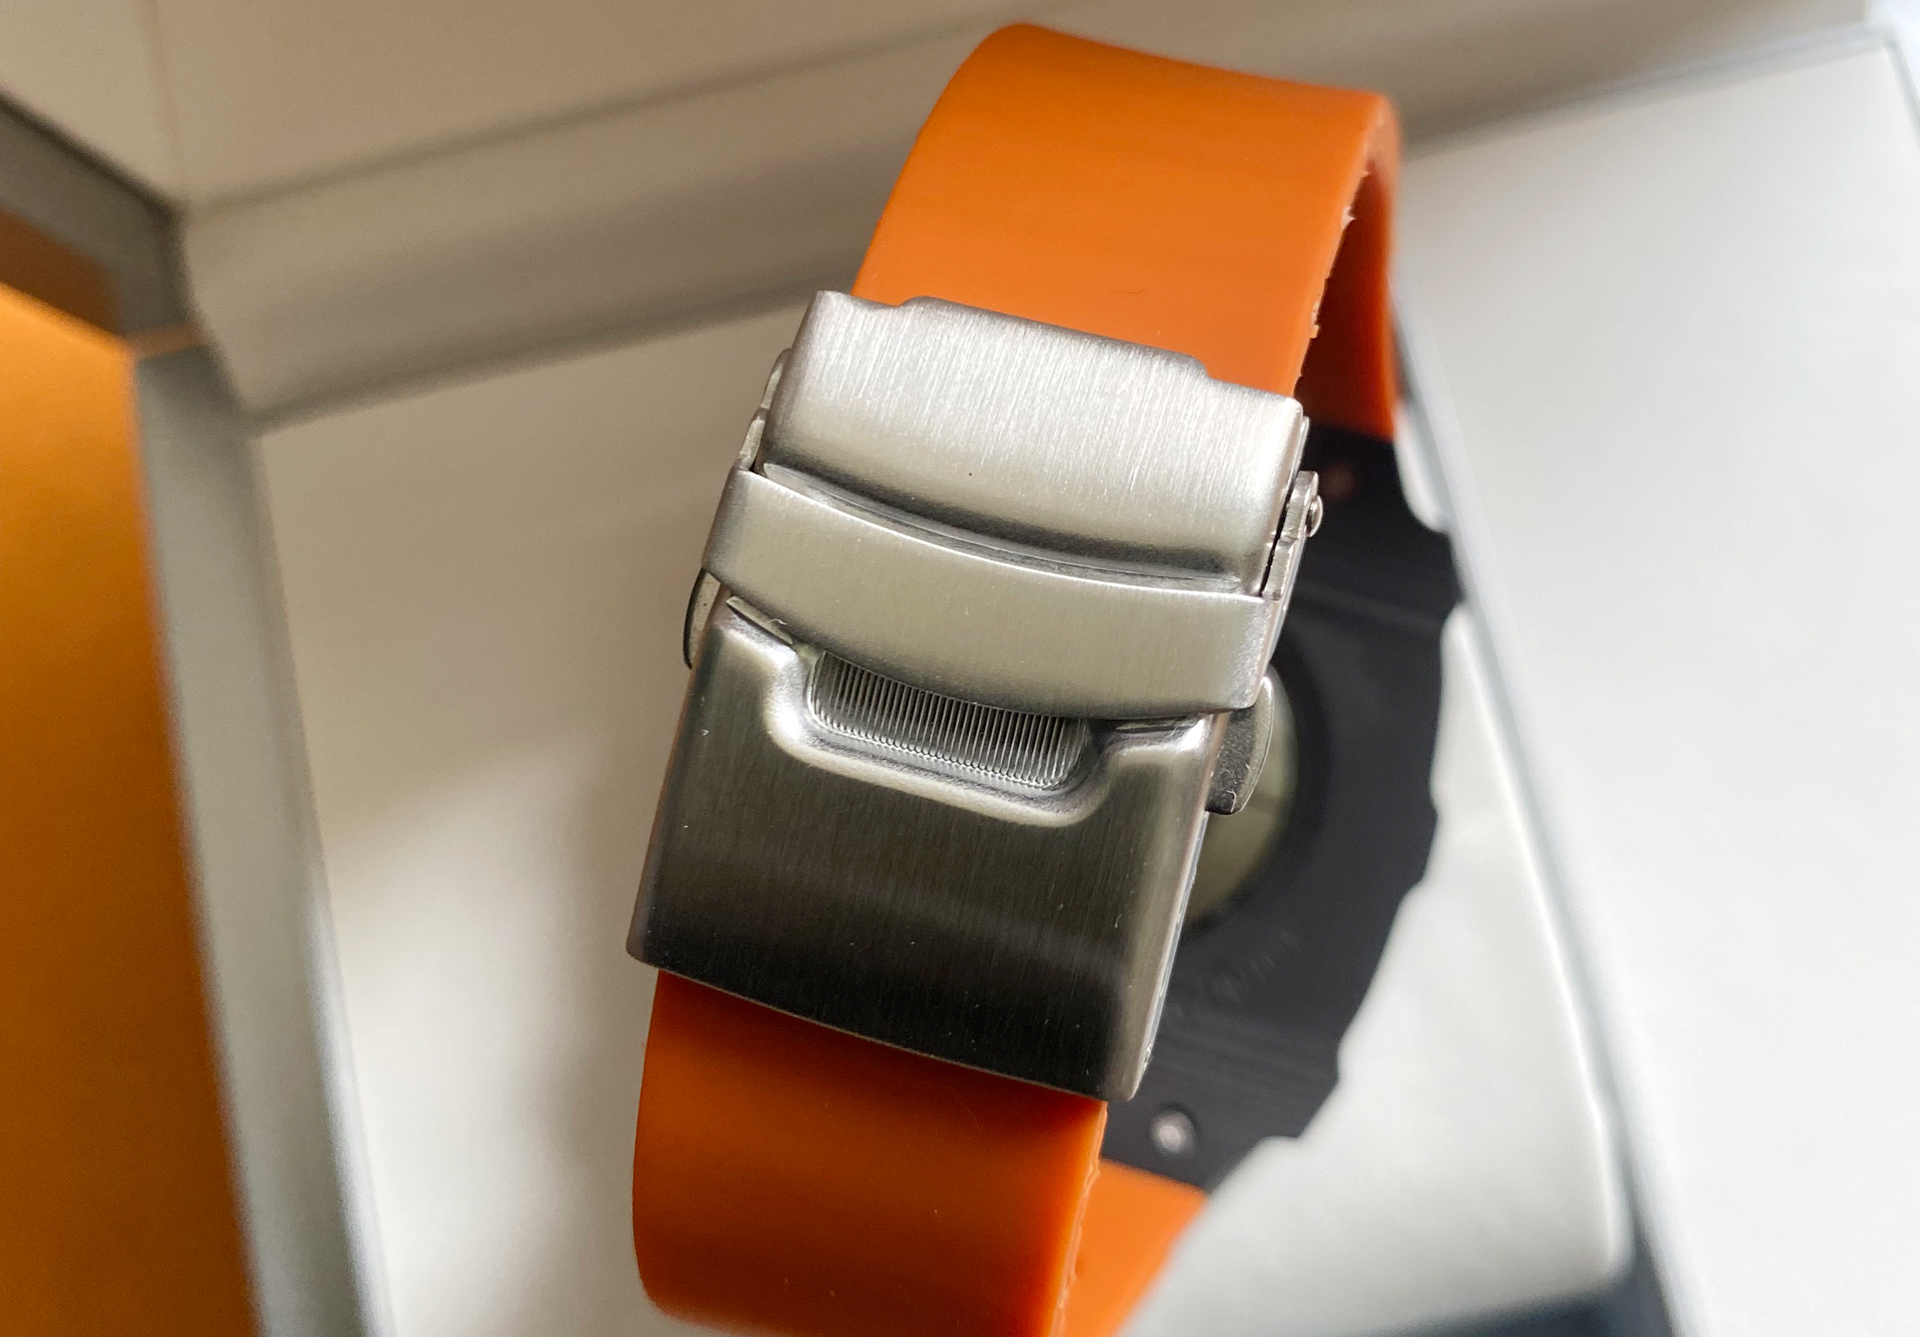 芯片设计|原版Apple watch S7 与定制款，有何不同？